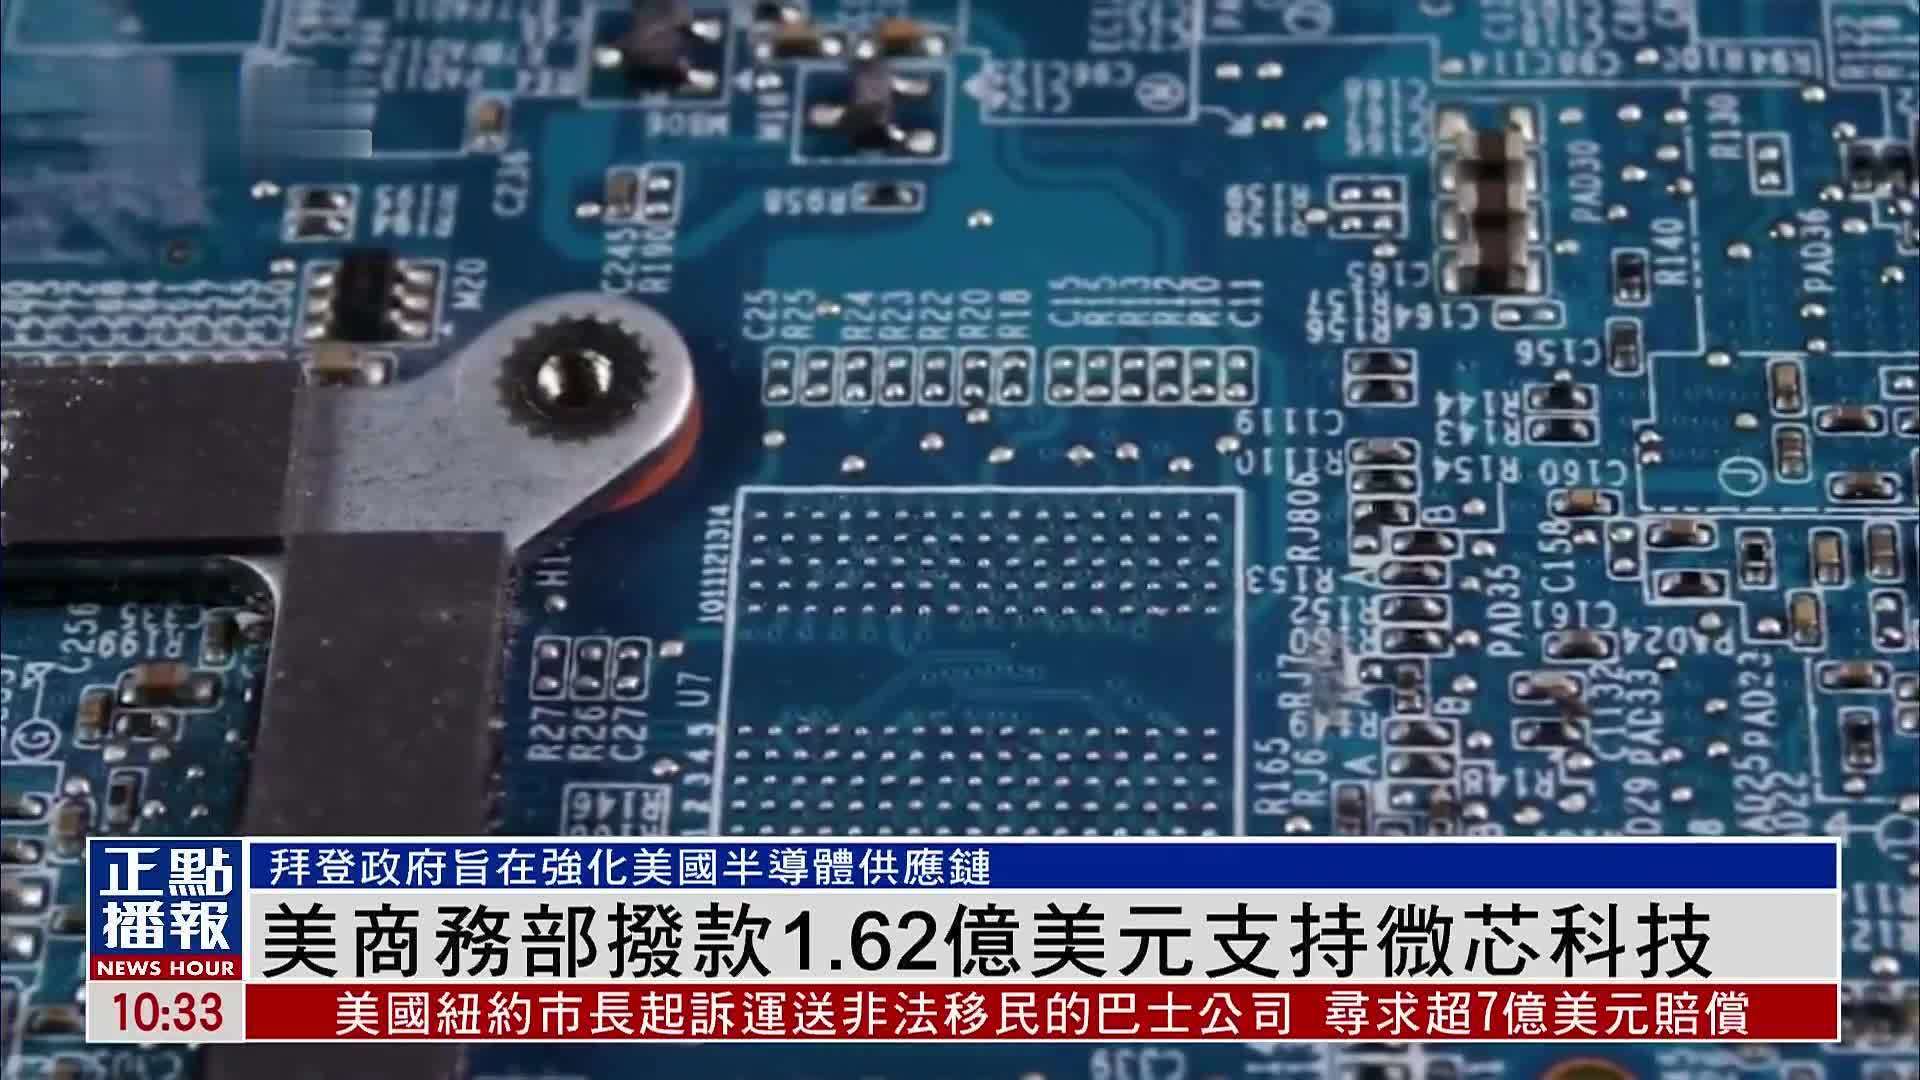 “红外梦 中国芯”——艾睿光电打造全球热成像核“芯”新动能